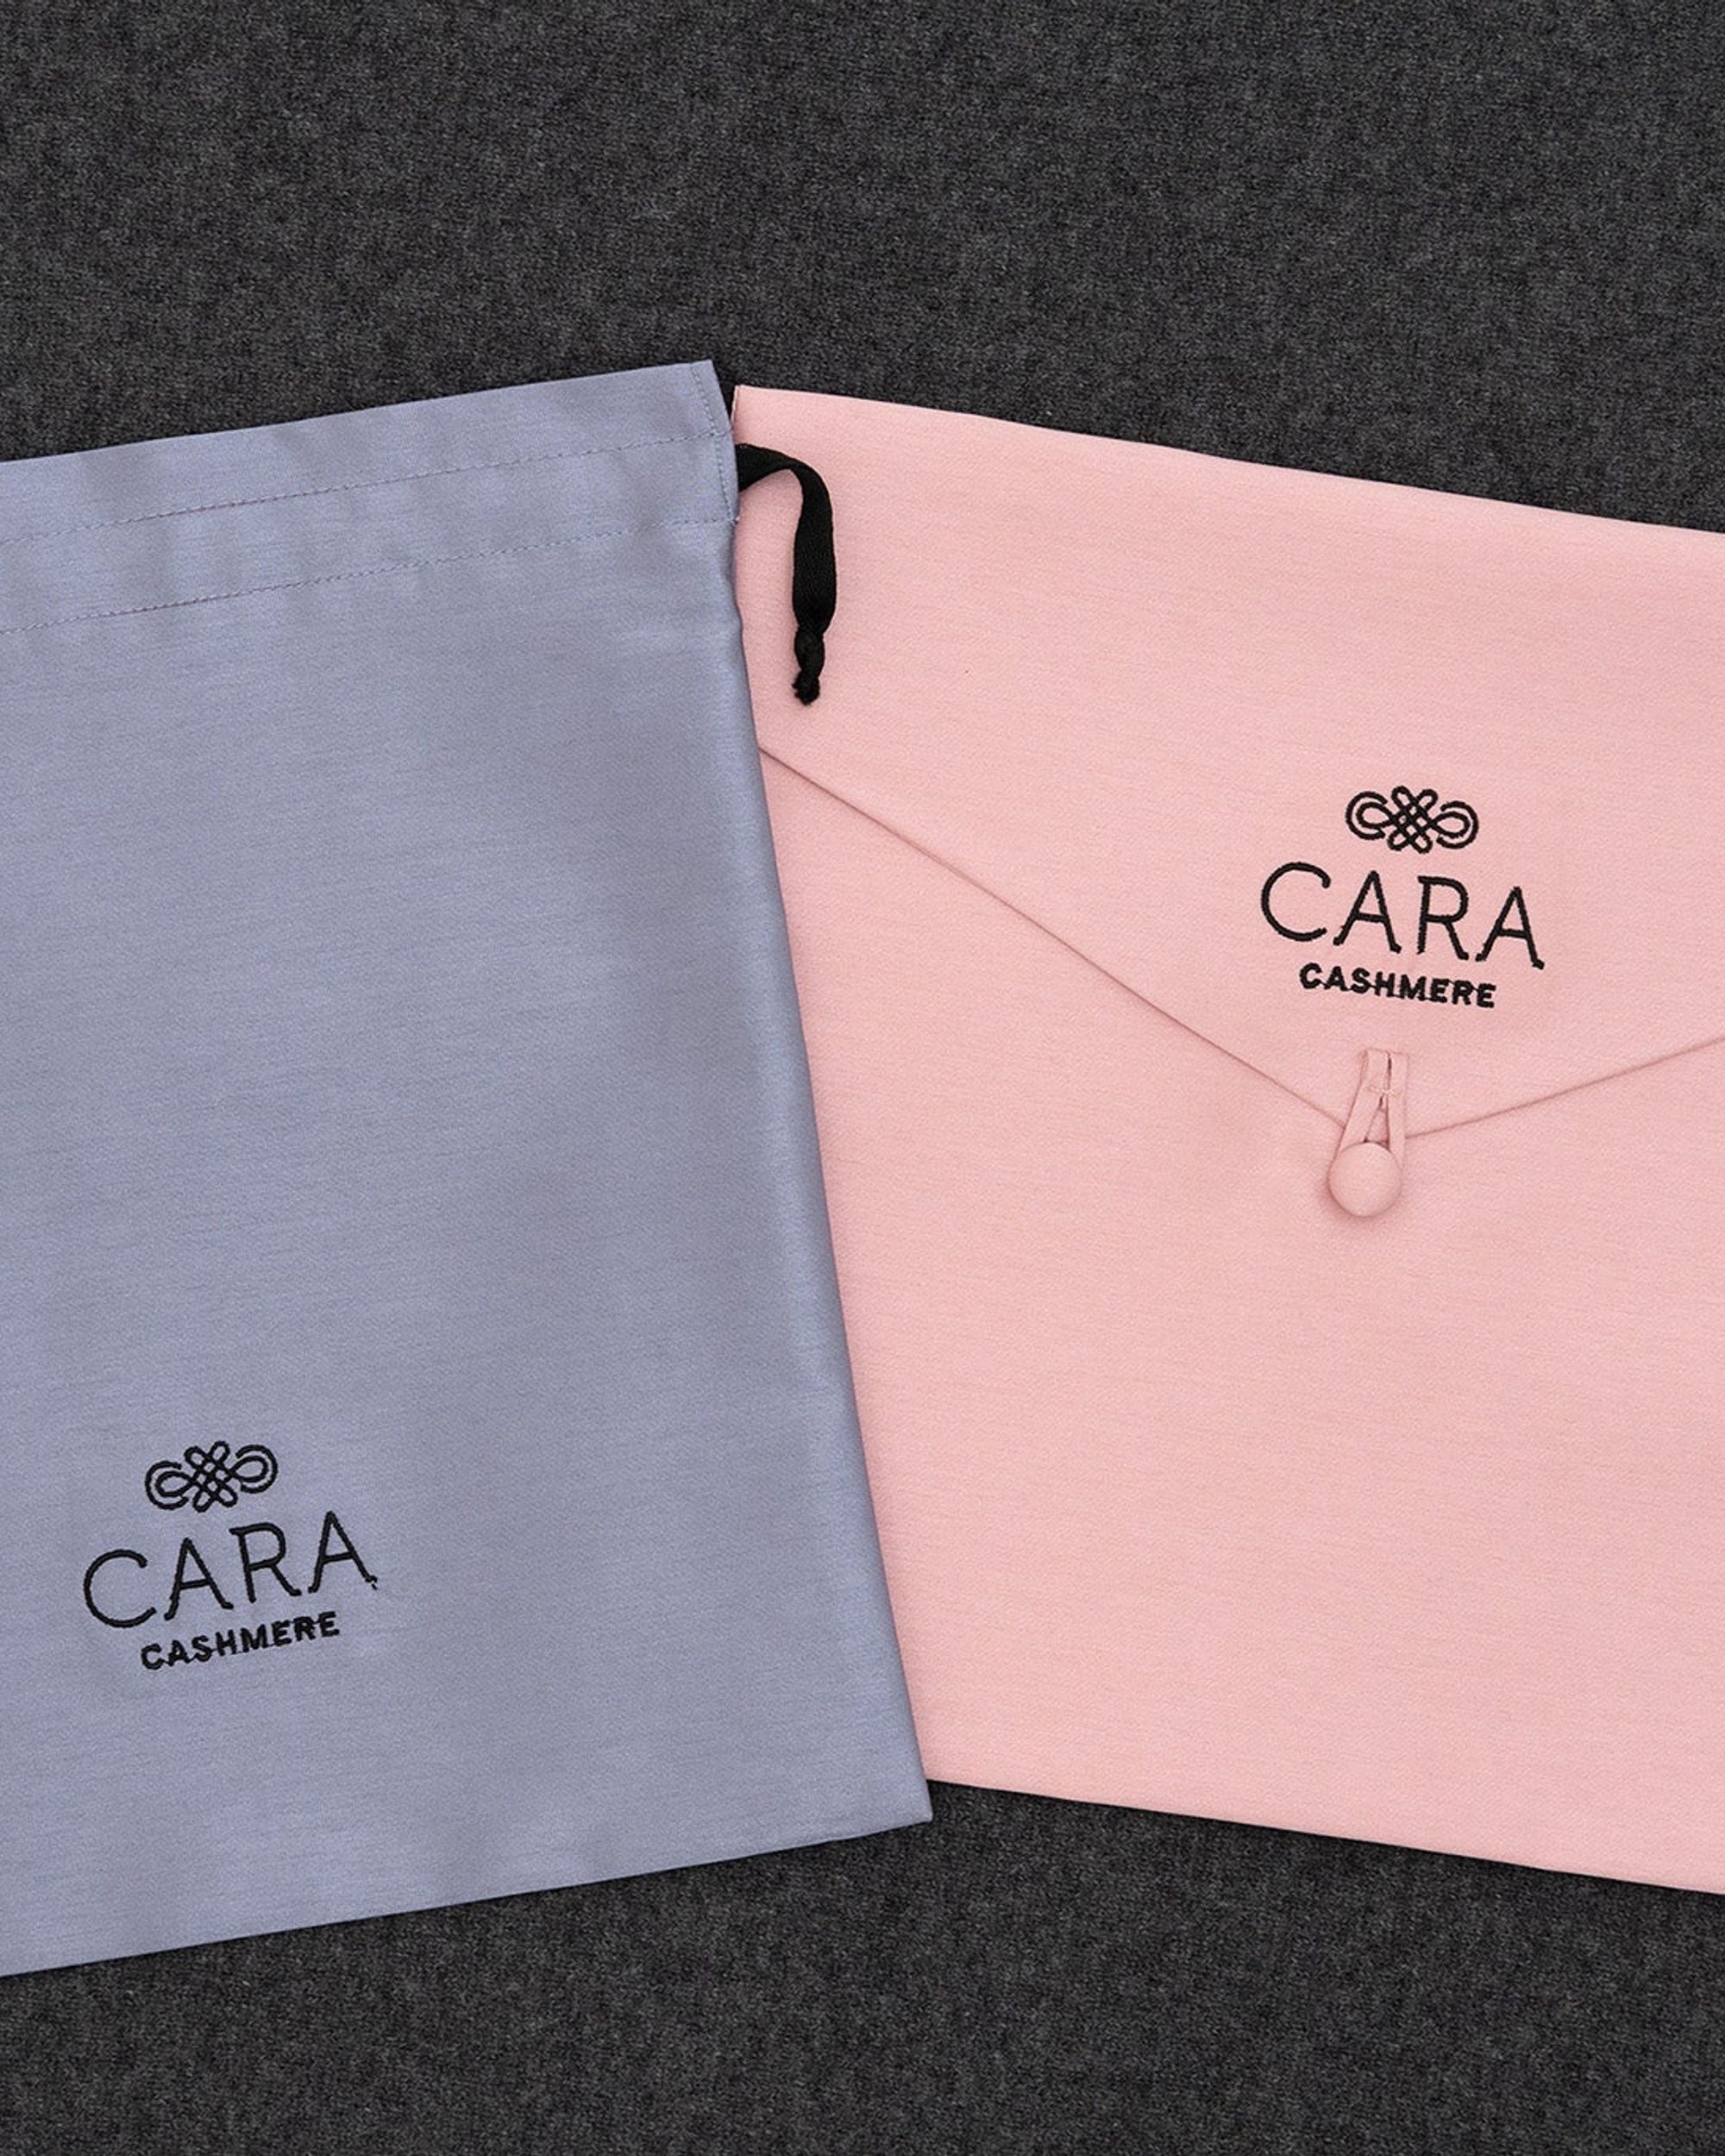 Cara Cashmere Storage Bags - Cara Cashmere